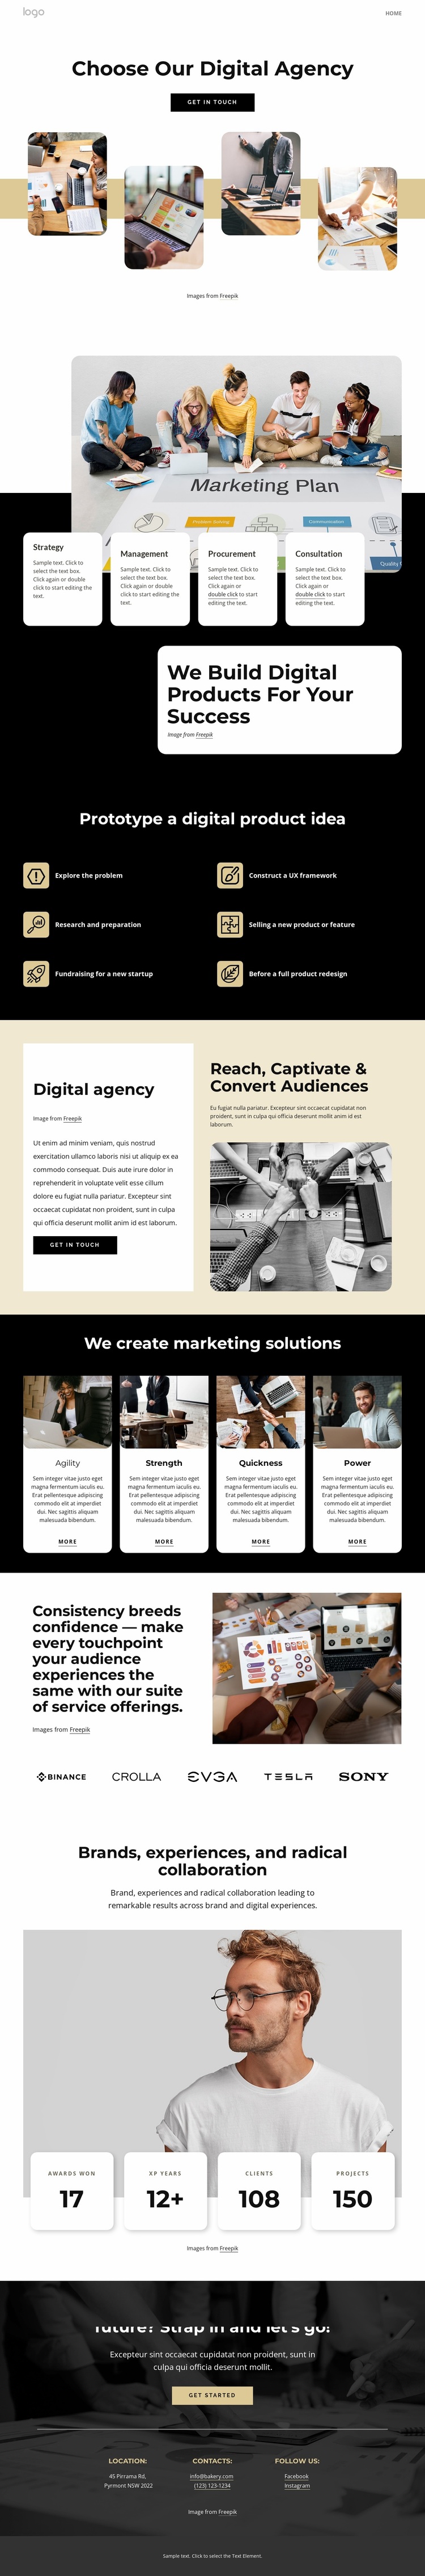 Choose our digital agency Website Design